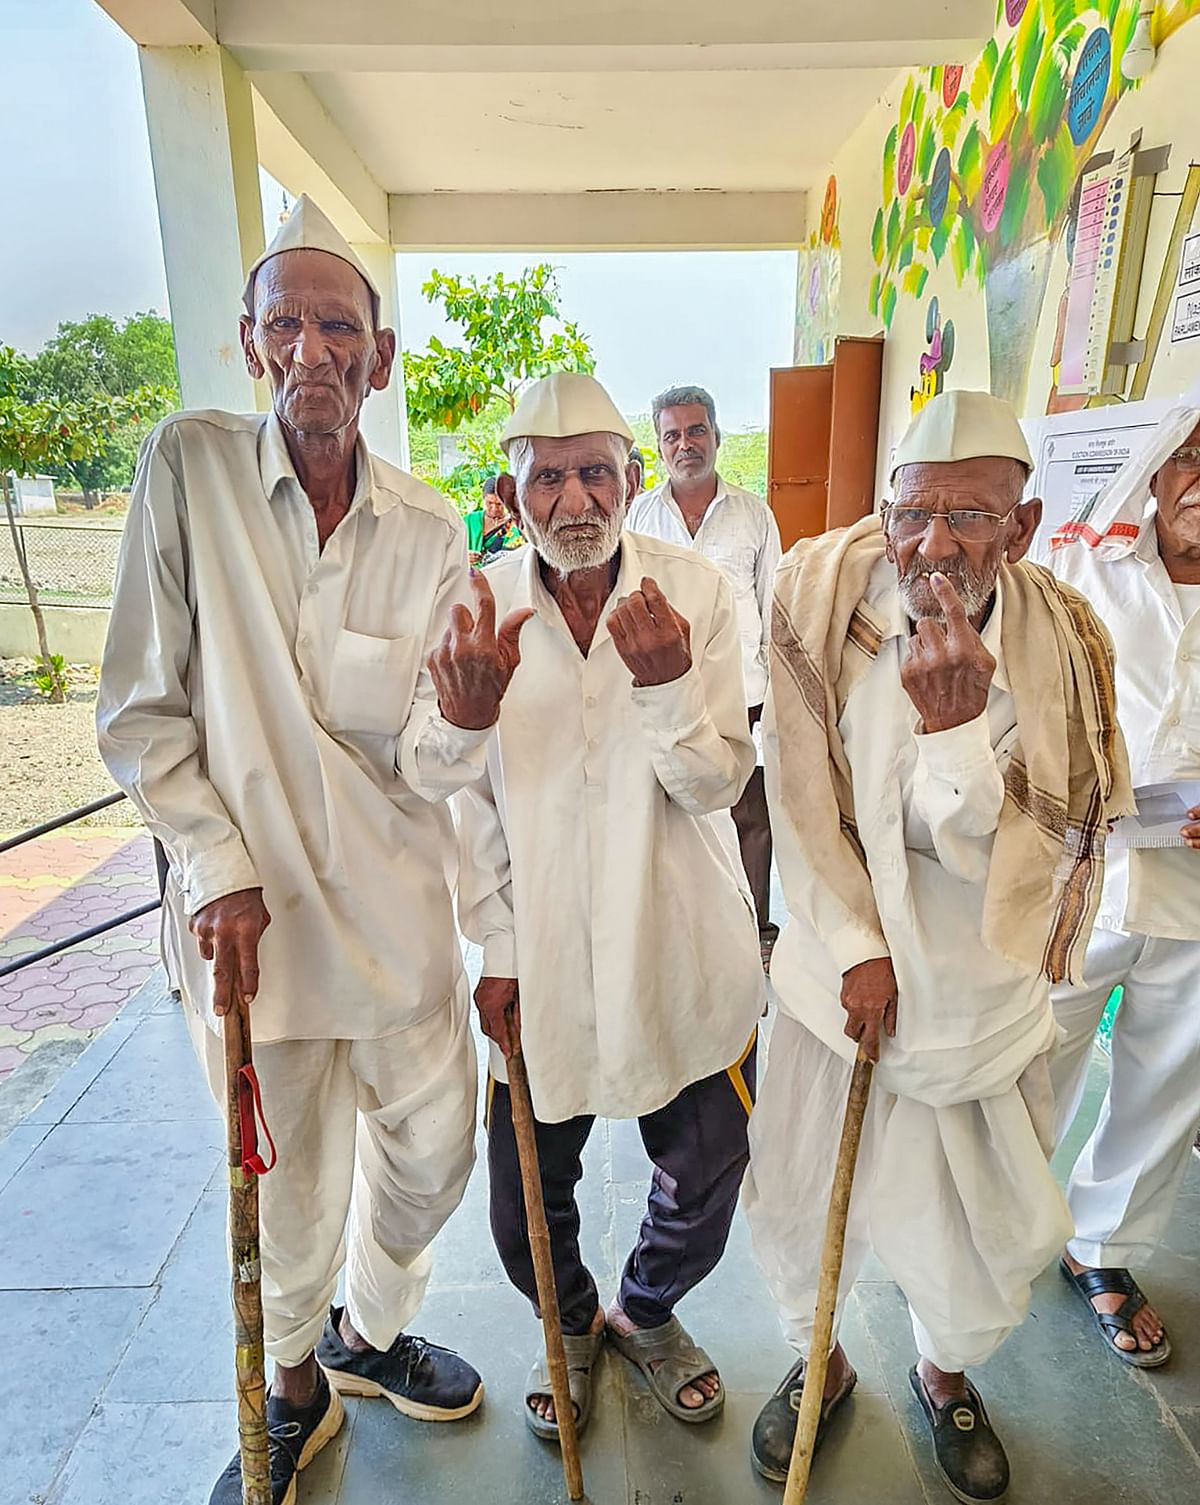 ಮಹಾರಾಷ್ಟ್ರದ ನಾಸಿಕ್‌ನಲ್ಲಿ ಸಹೋದರರಾದ ಮಧುಕರ್ ಜಗತಾಪ್‌ (97) ಮಾಧವ್ ಜಗತಾಪ್‌ (85) ಸದಾಶಿವ ಜಗತಾಪ್‌ (84) ಒಟ್ಟಿಗೆ ಬಂದು ಮತಹಕ್ಕು ಚಲಾಯಿಸಿ ಗಮನಸೆಳೆದರು 